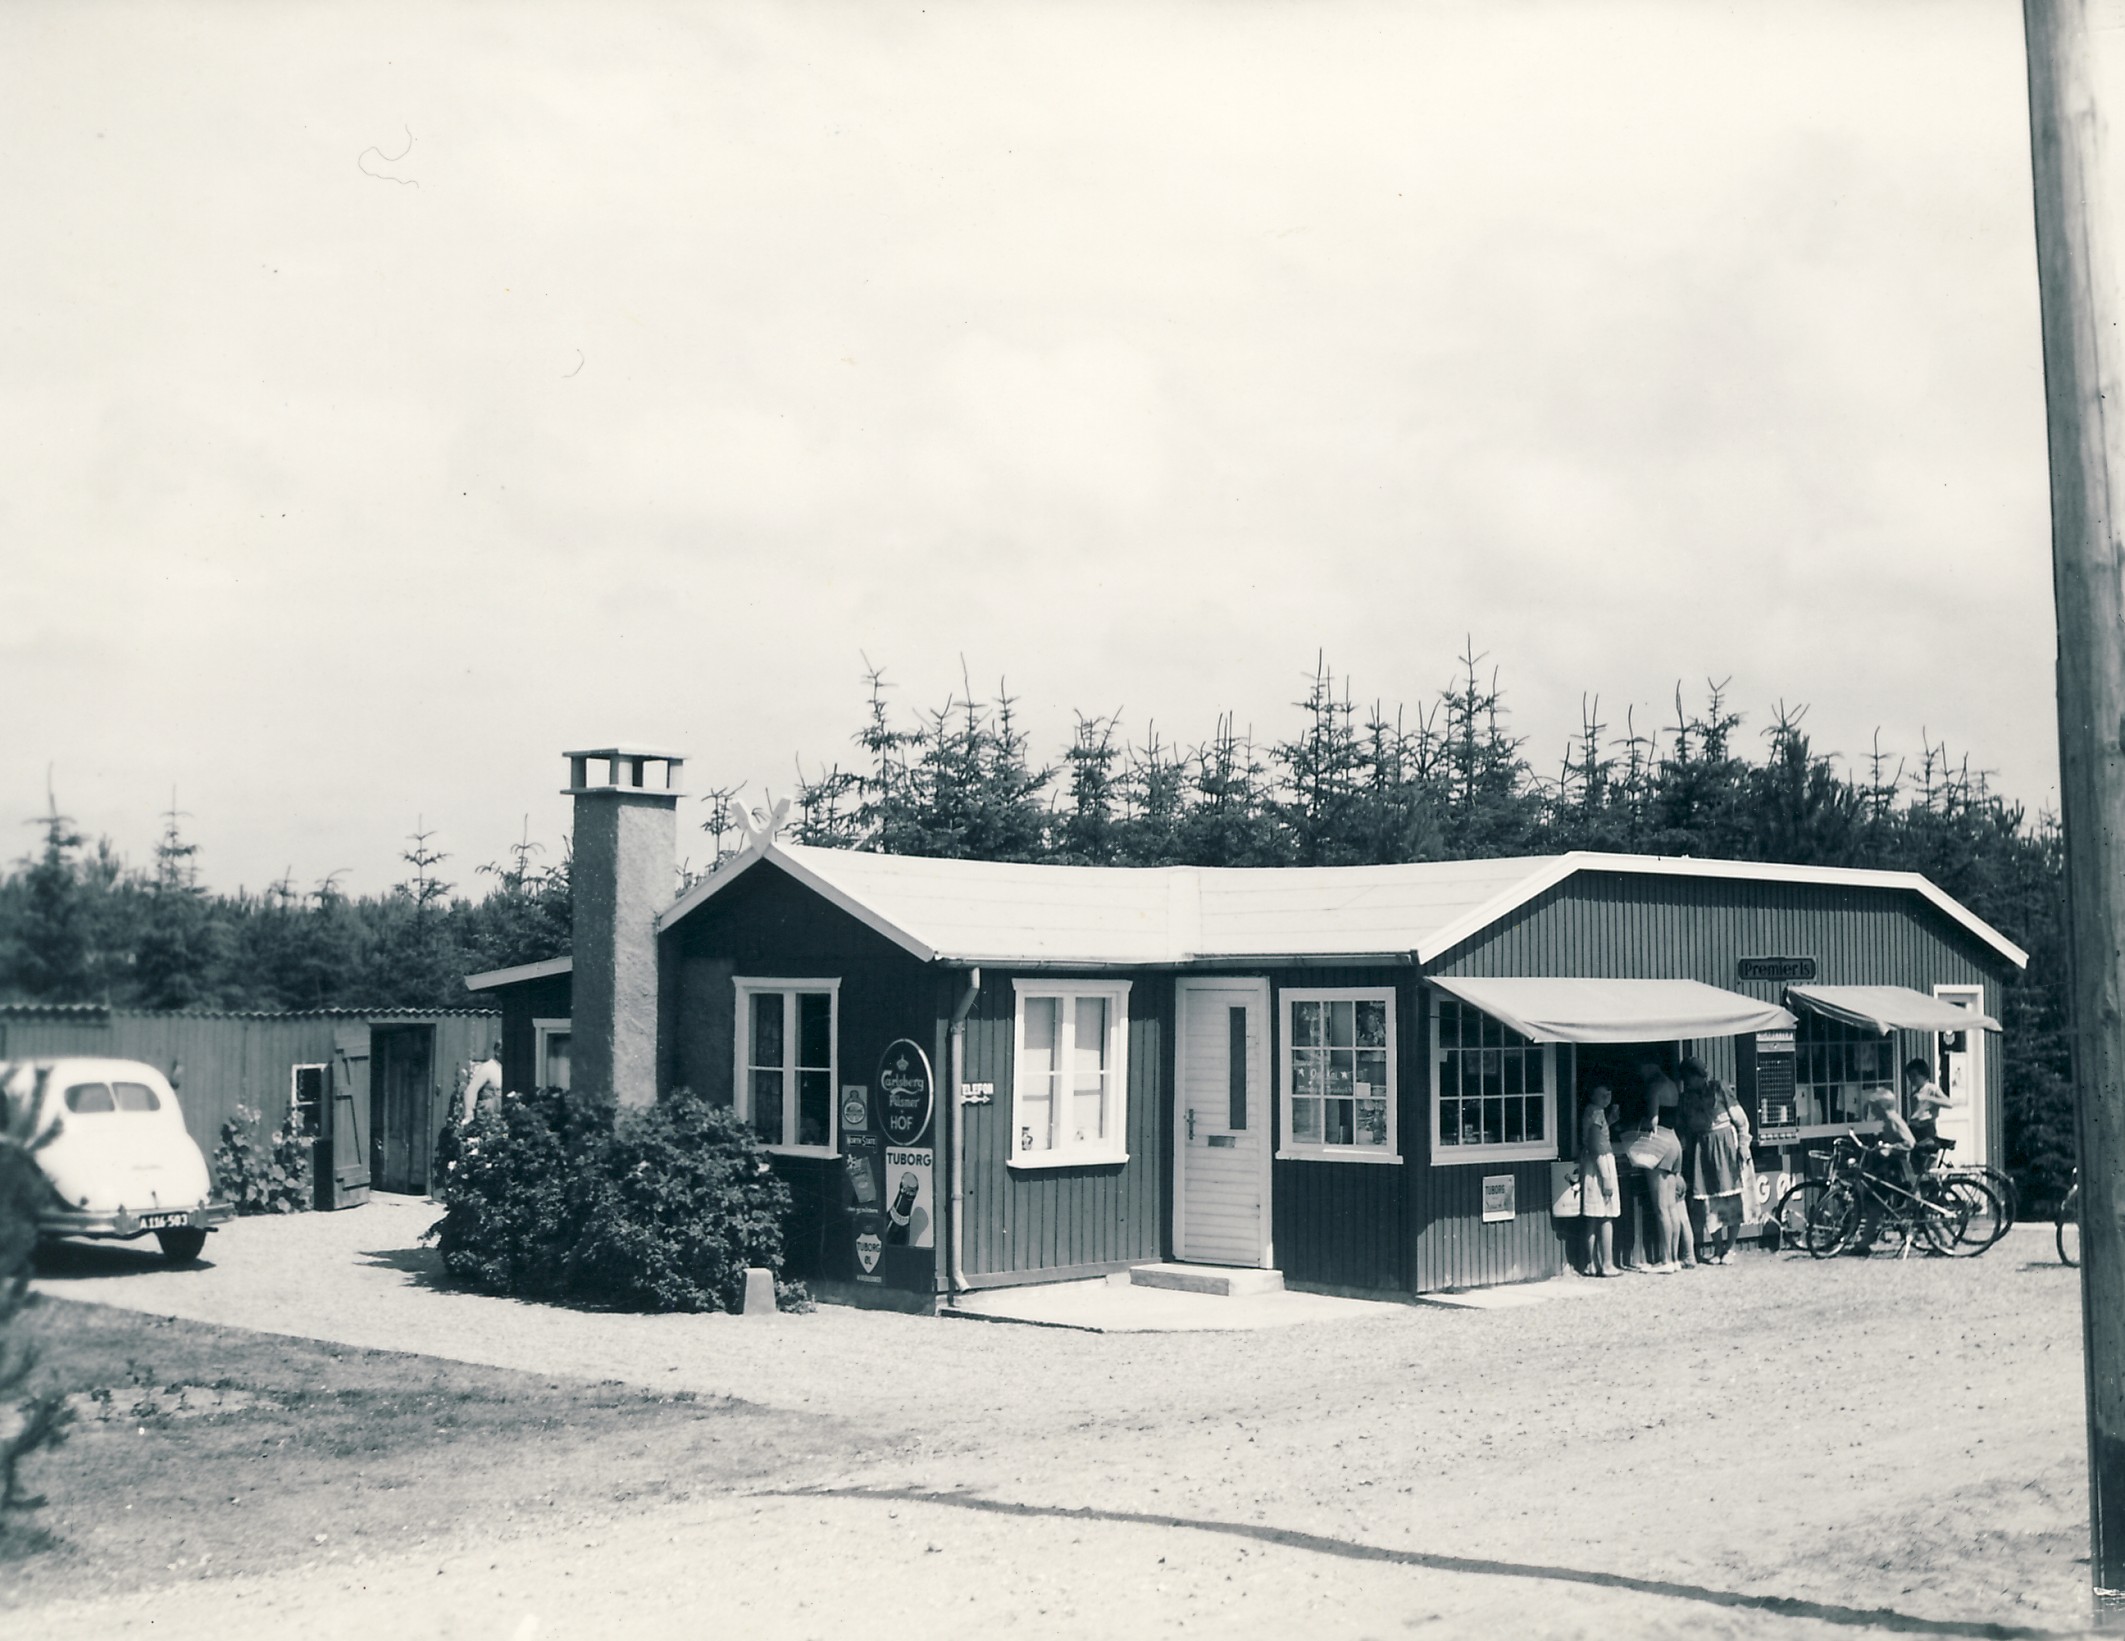 Butik Strandgården, Gudmindrup - ca. 1955 (B4584)